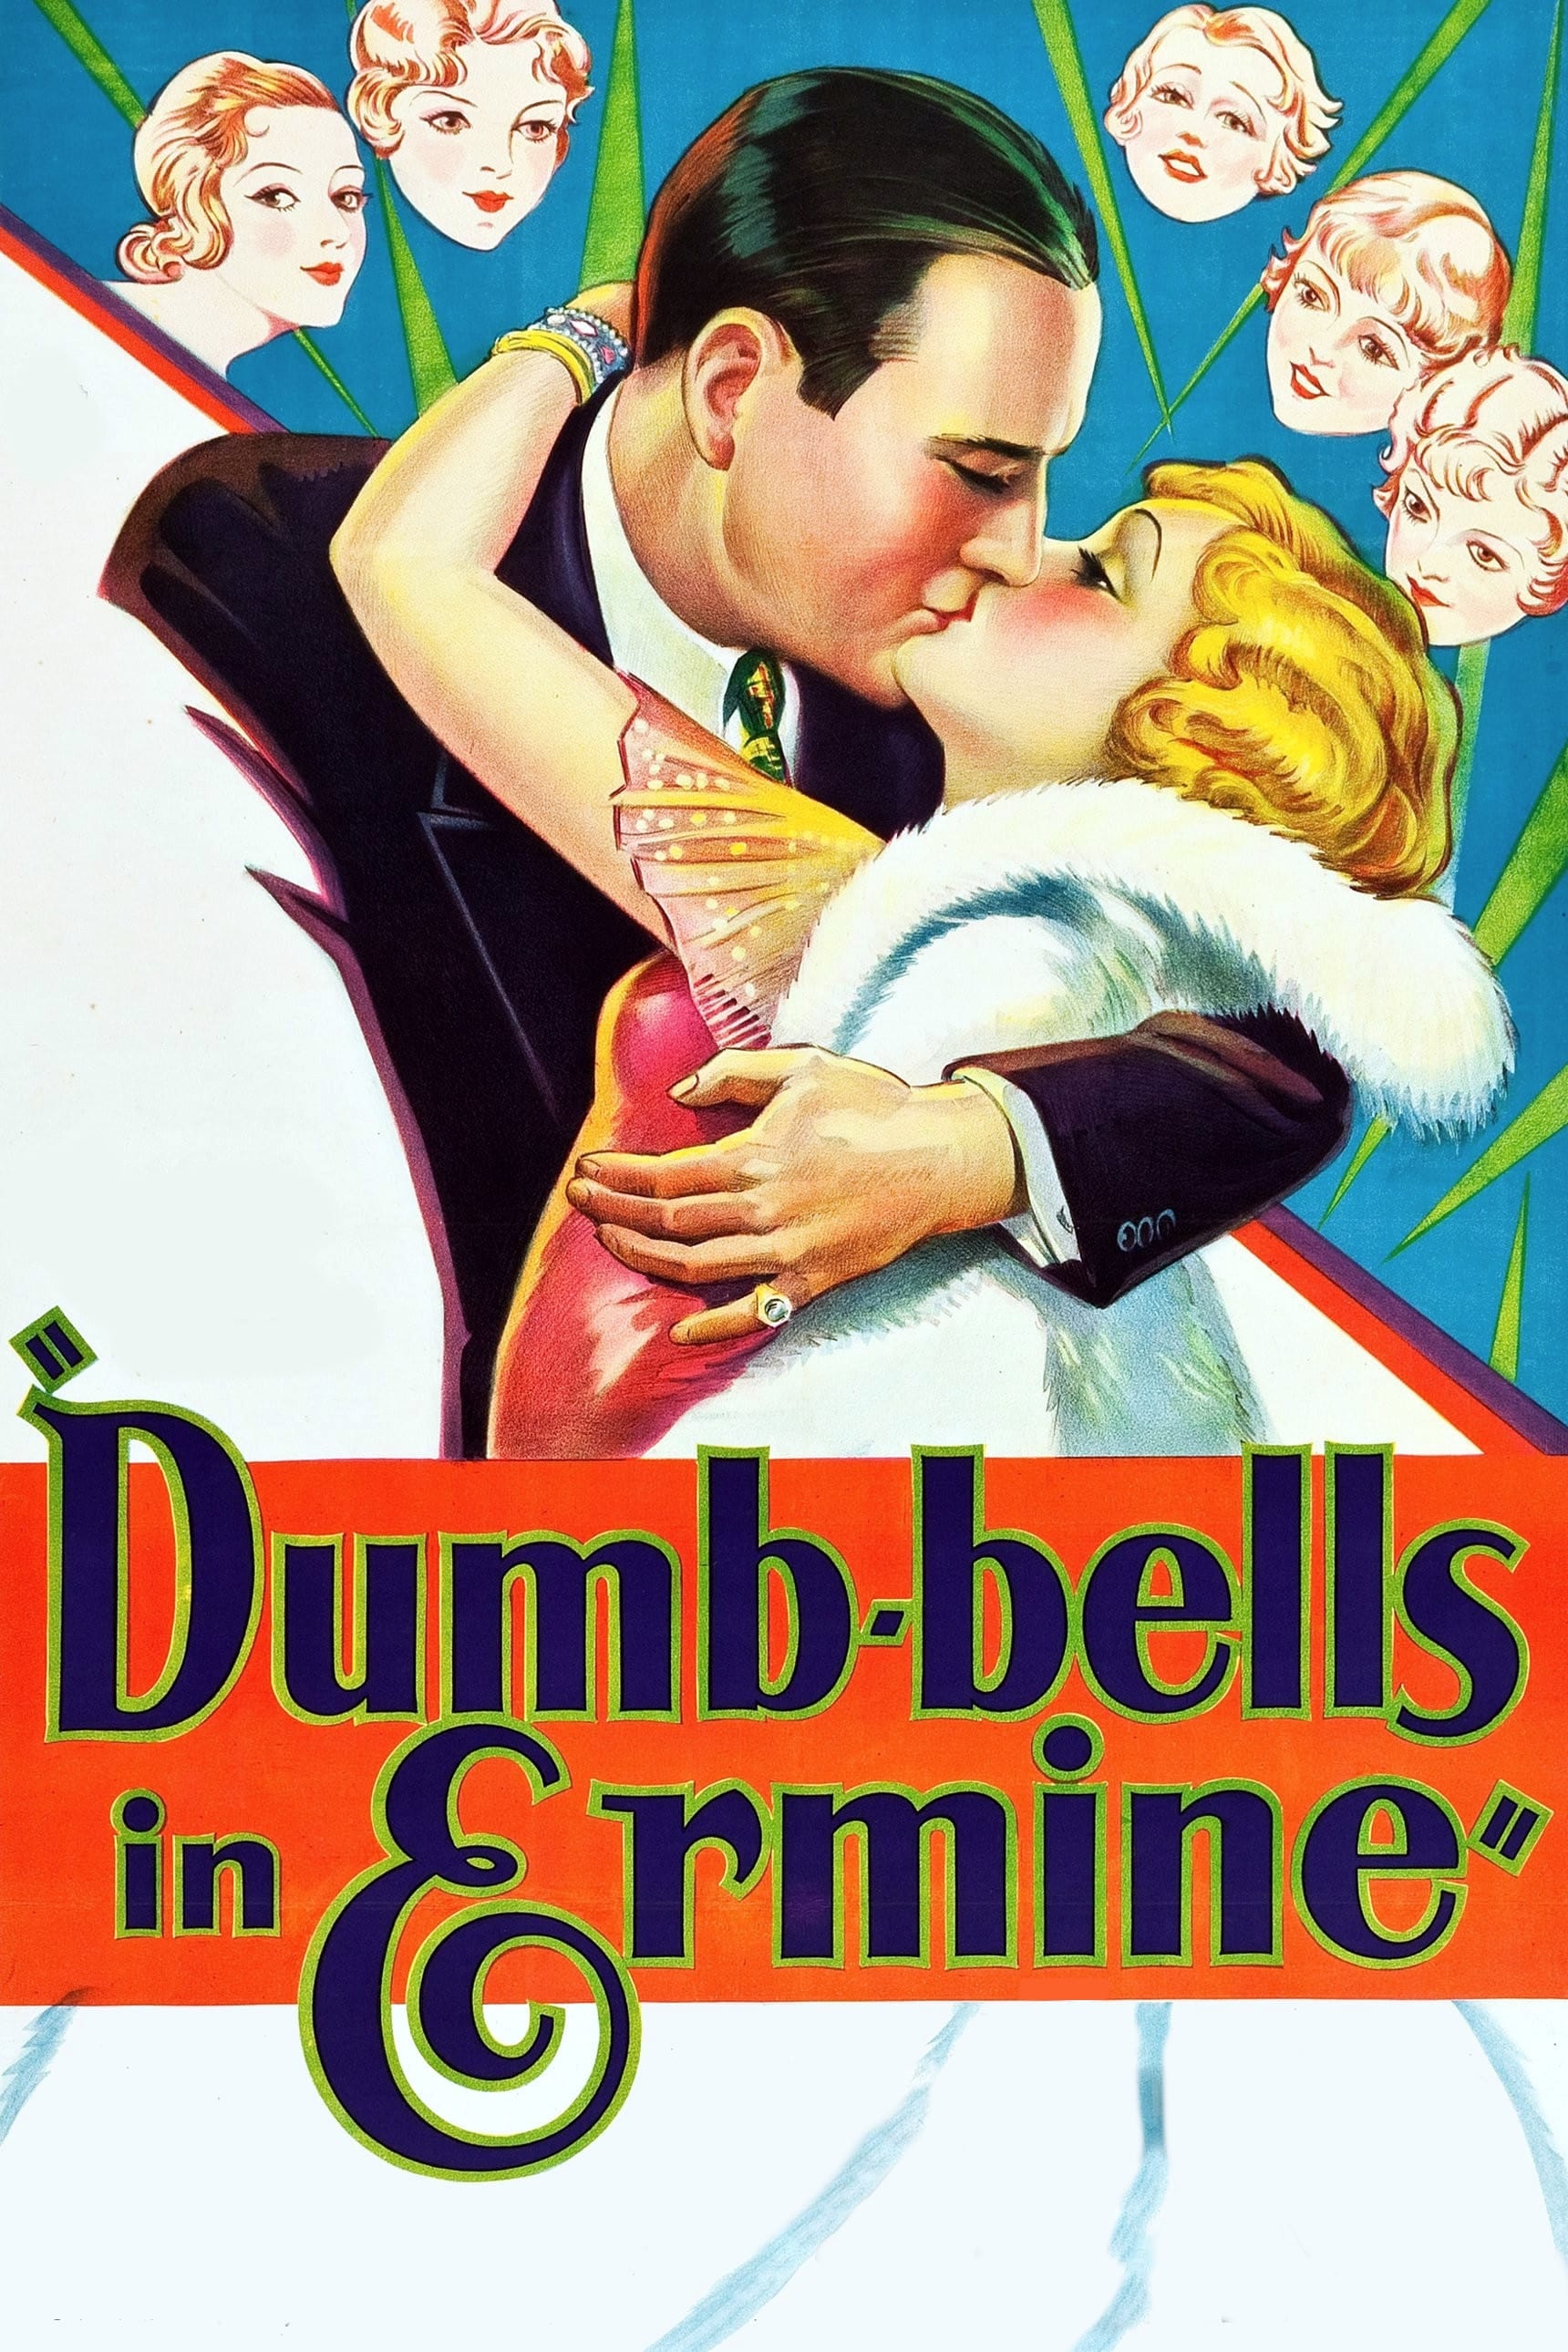 Dumb-bells in Ermine (1930)